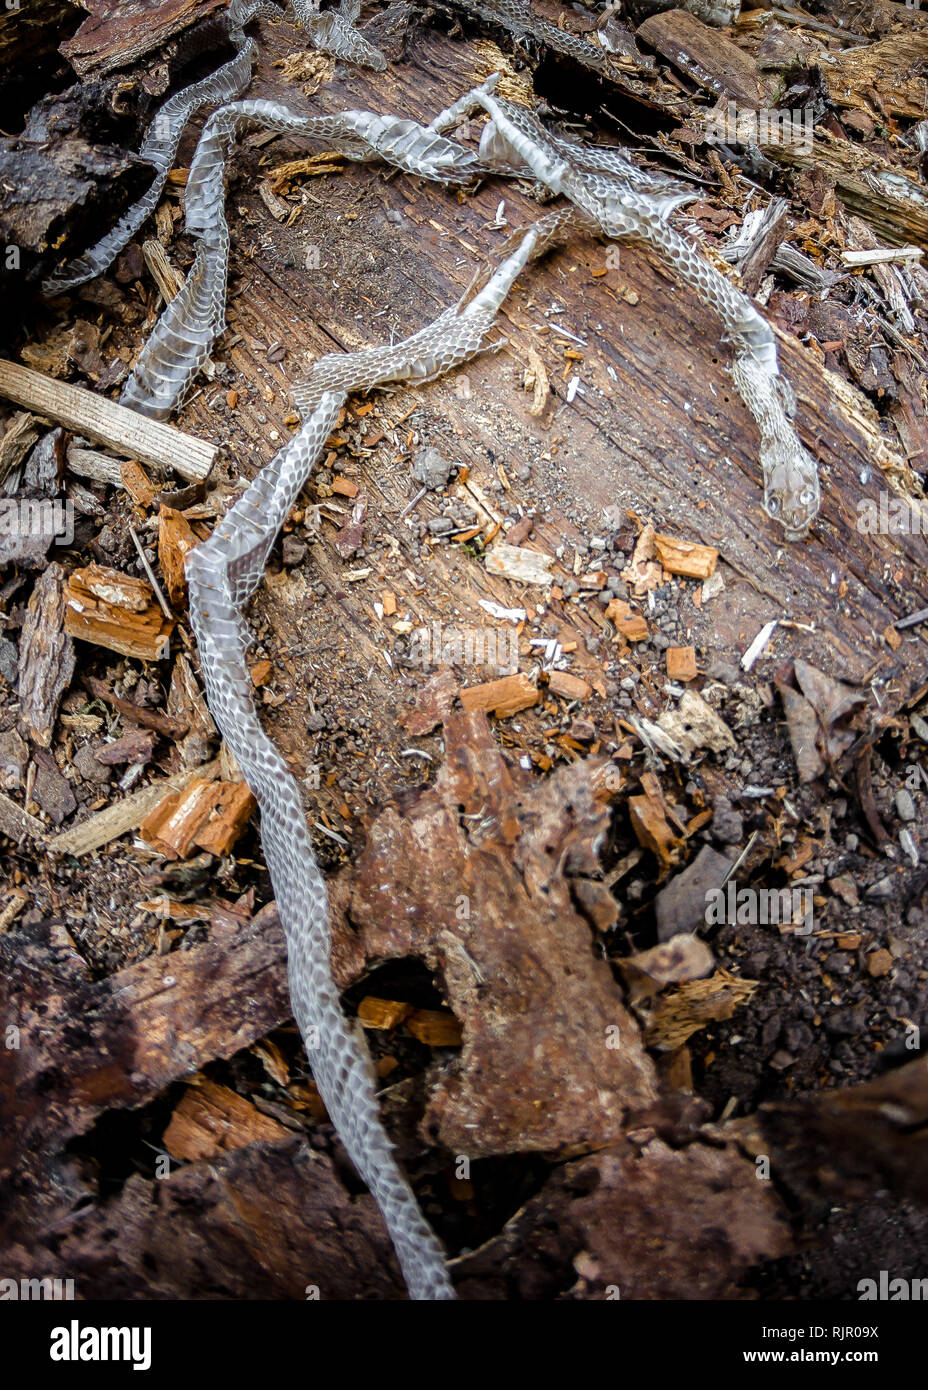 Snake slough sur fond de bois, les mal-peau de serpent à l'état sauvage Banque D'Images